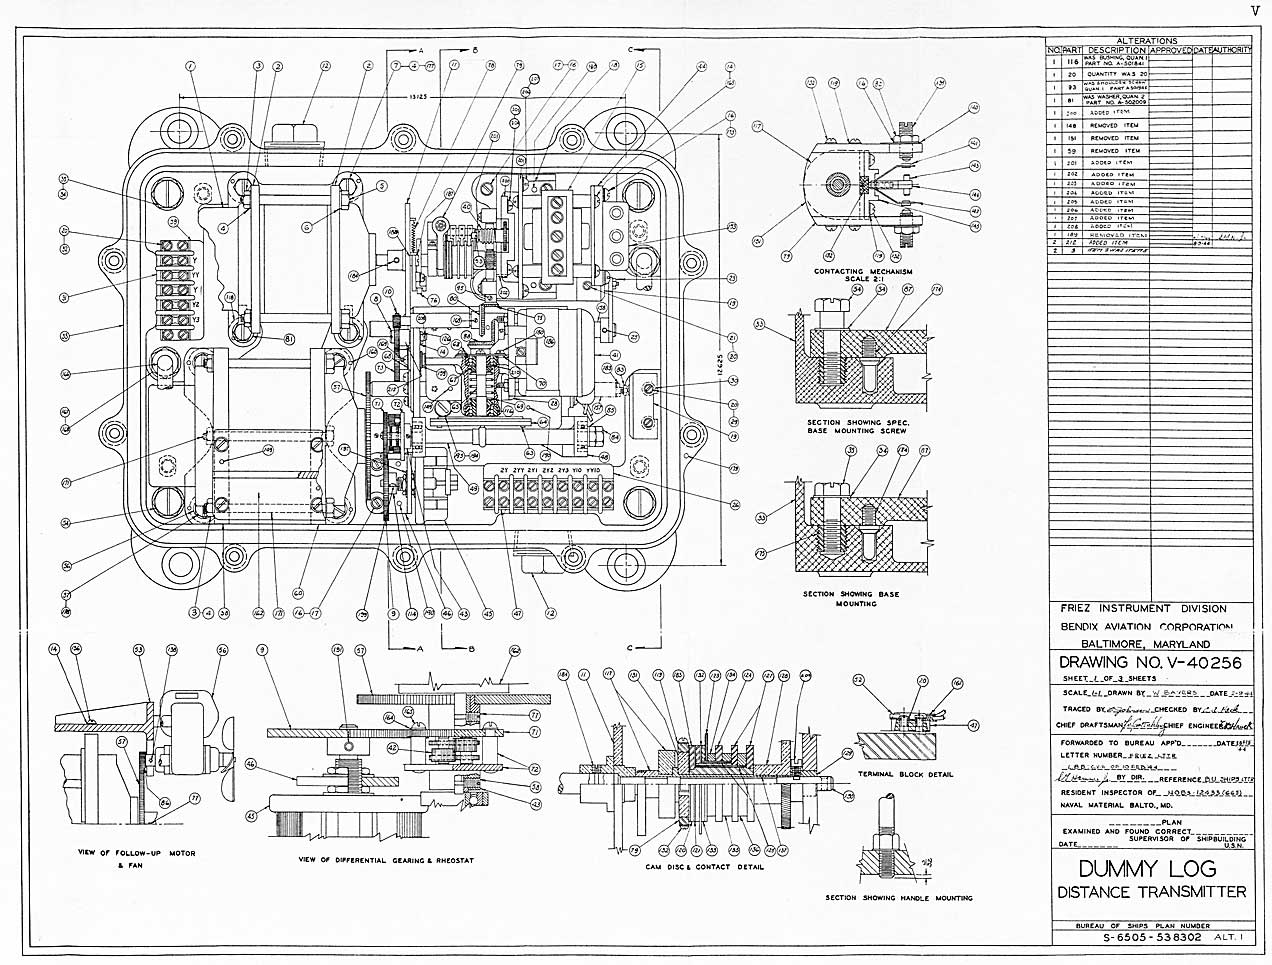 V-40256-Dummy Log Distance Transmitter-Sheet 1 - Assembly and Details